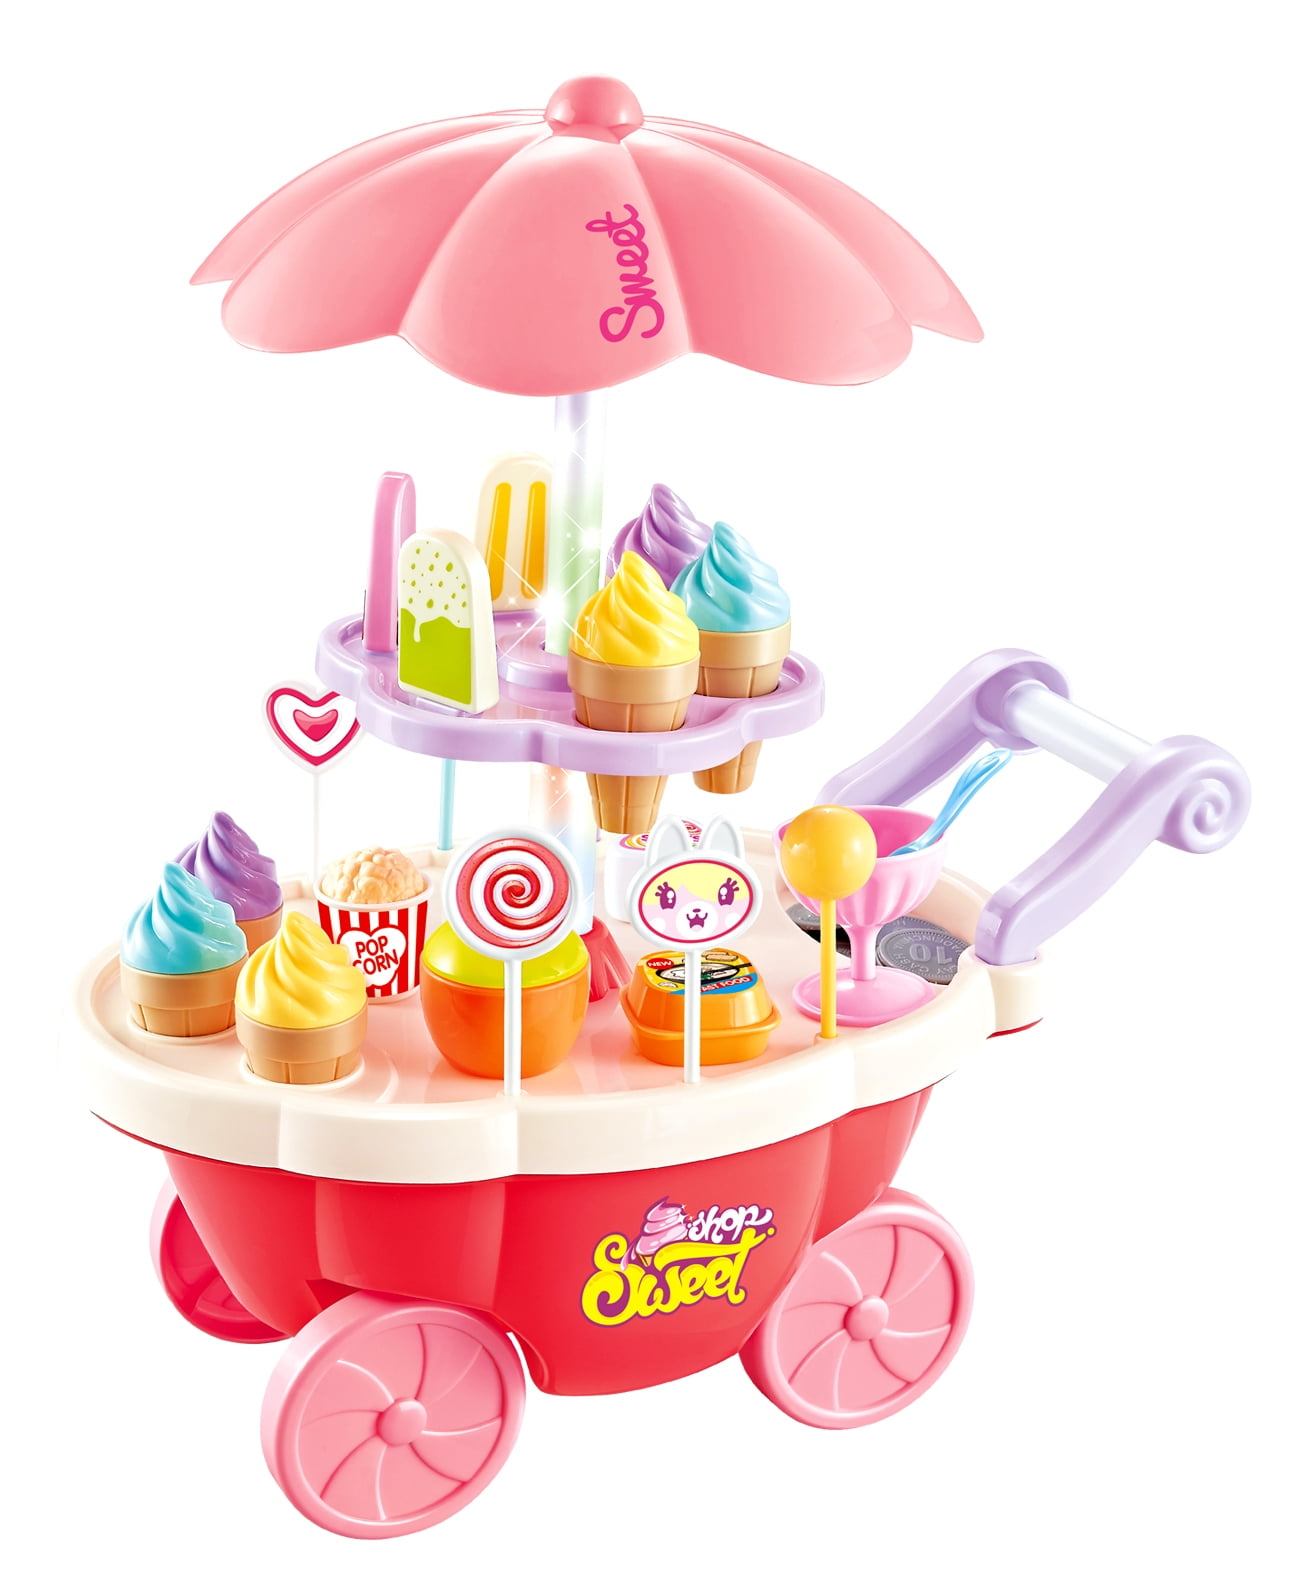 Ice cream cart toy